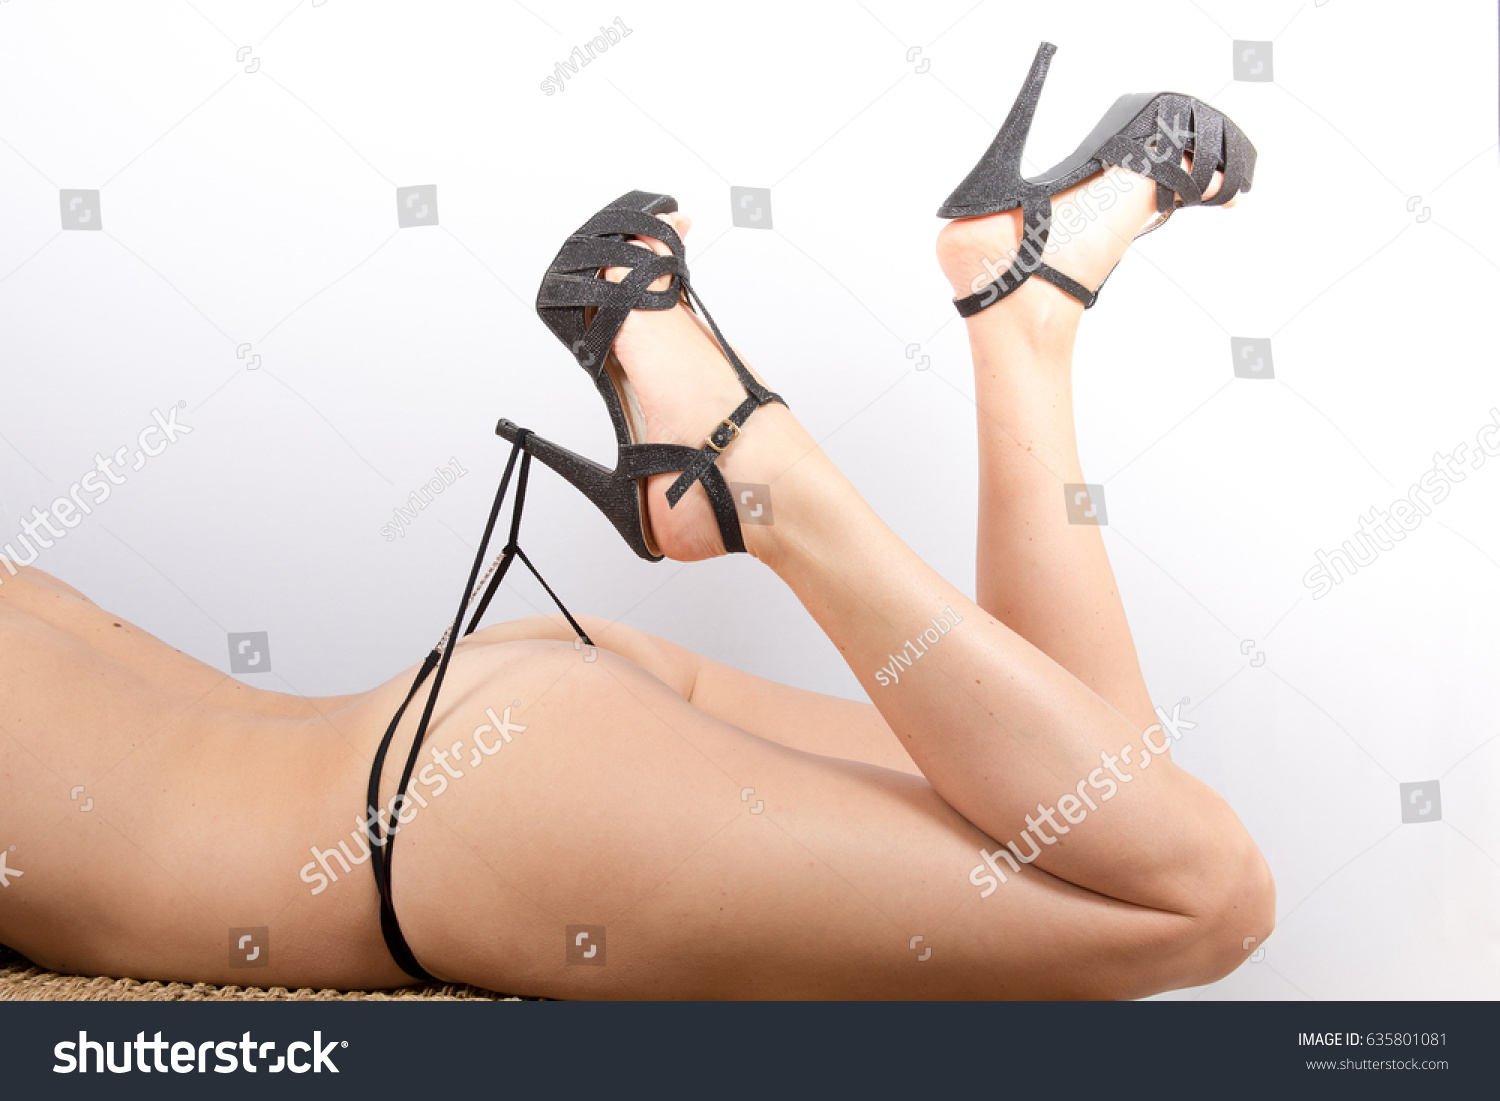 cj ricafort share high heels and panties photos